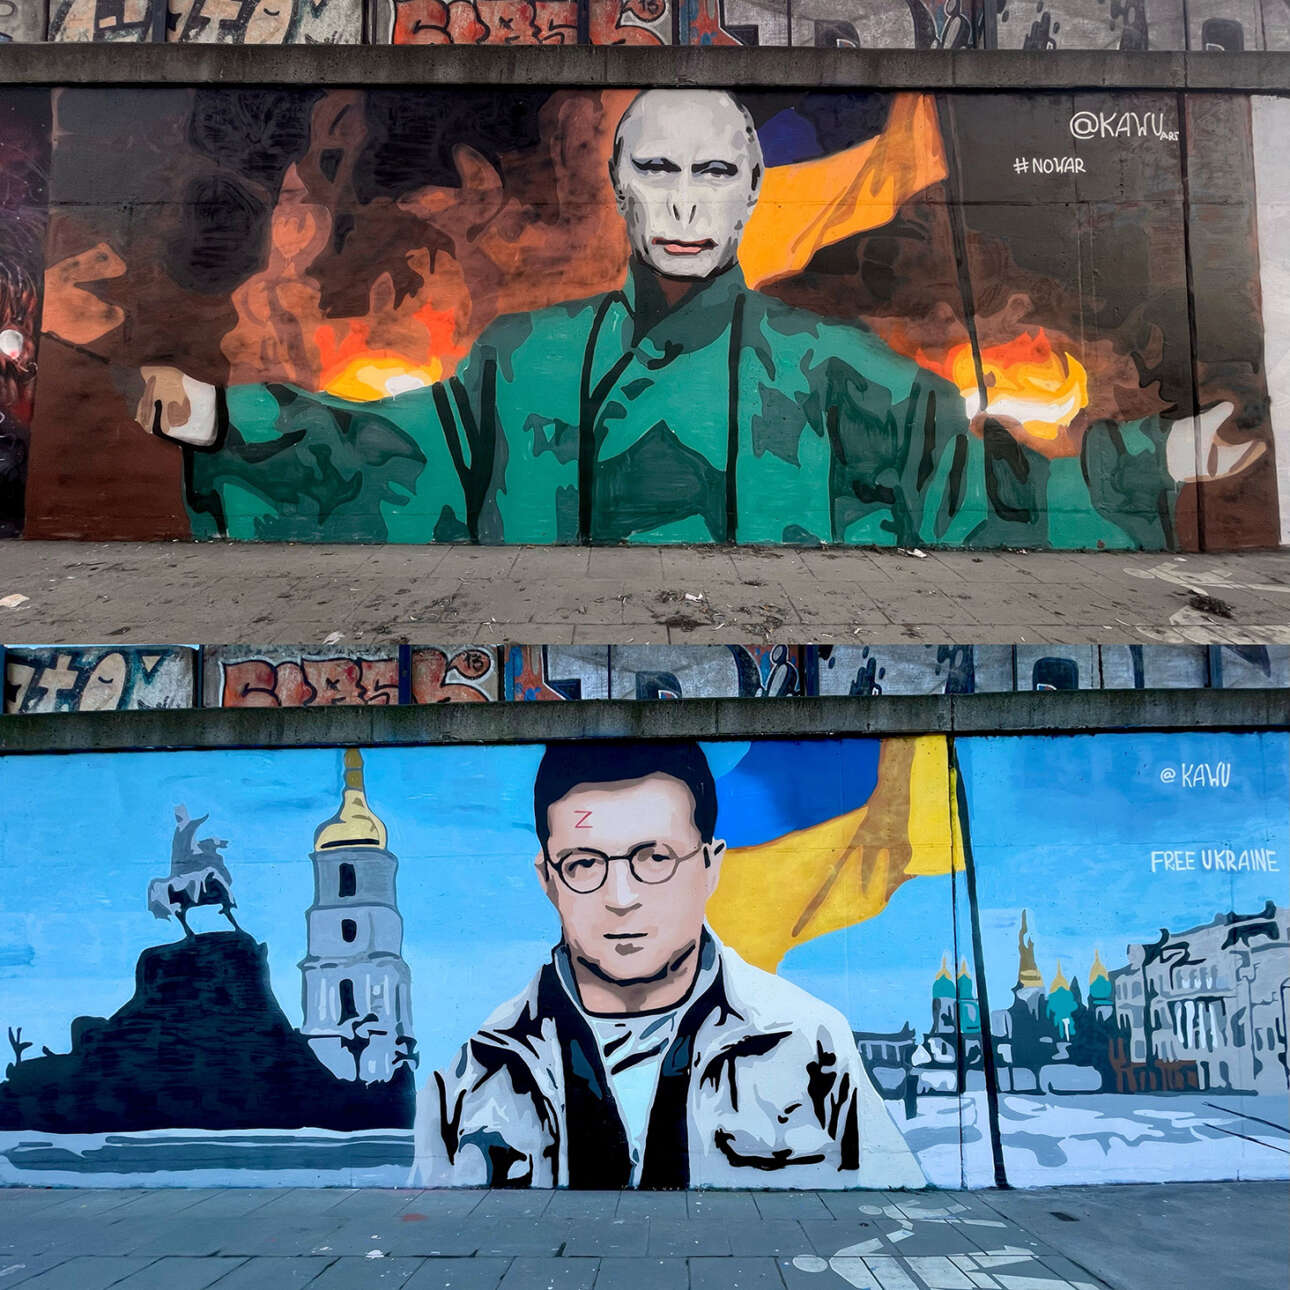 Ενα ευφάνταστο γκραφίτι στους δρόμους της Πολωνίας με τον Πούτιν ως Βόλντεμορτ και τον Ζελένσκι ως Χάρι Πότερ